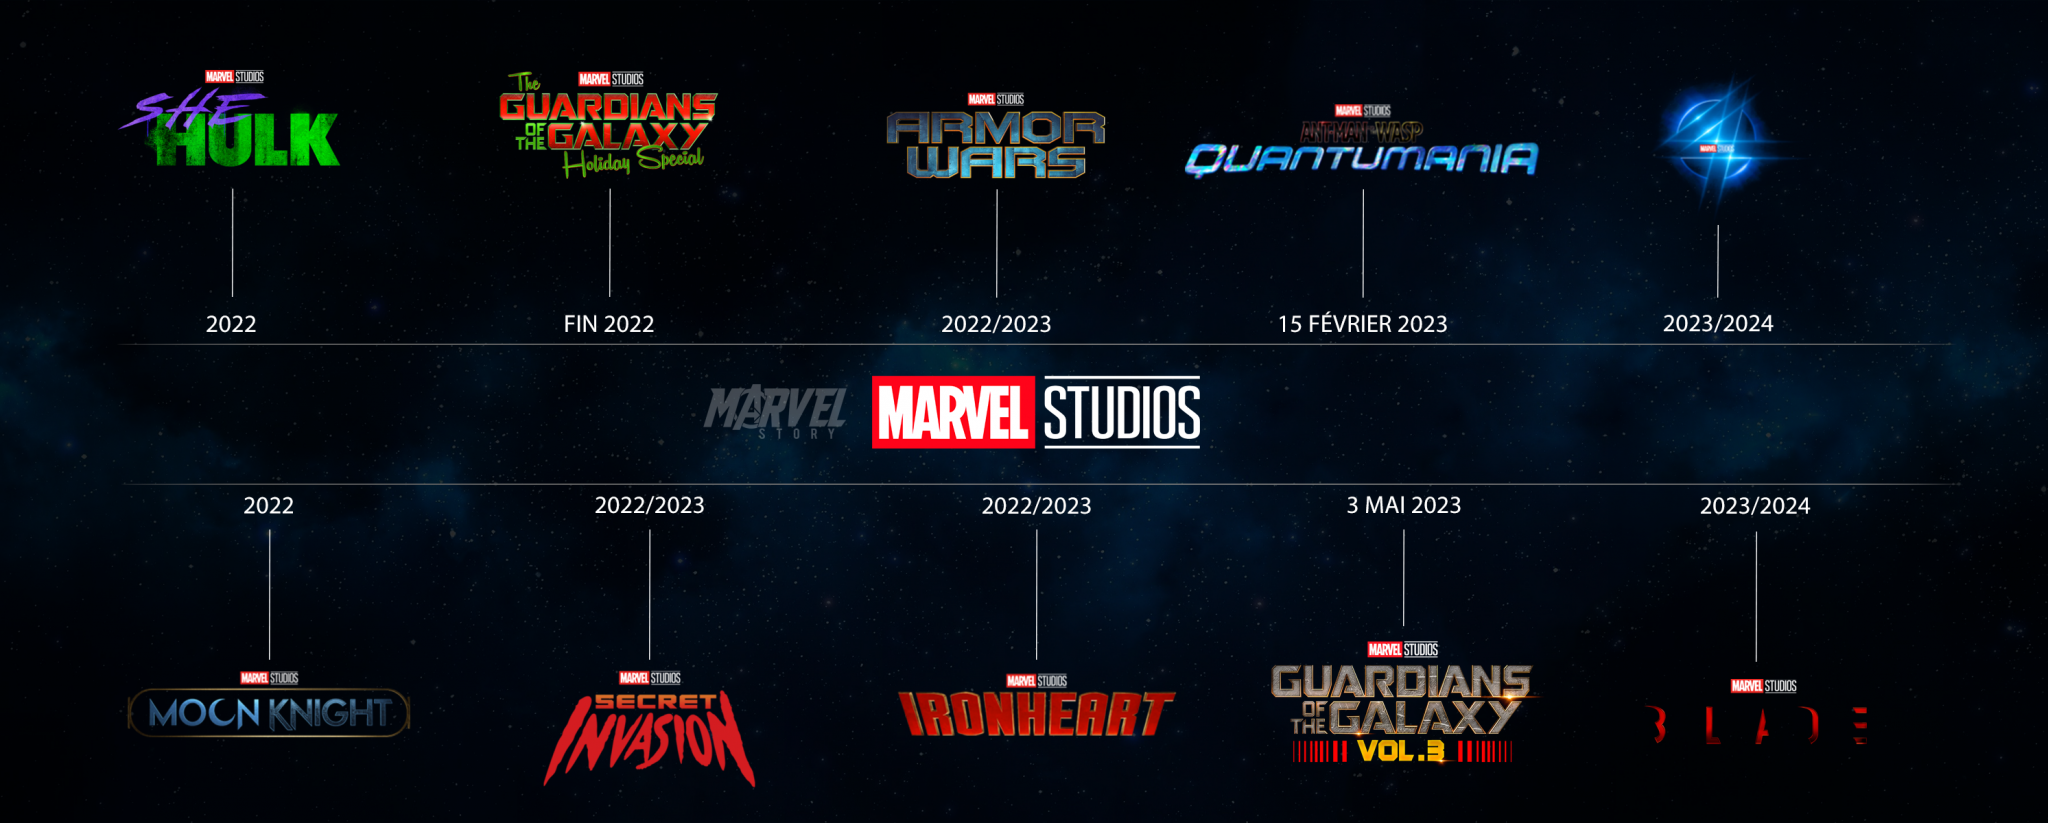 Phase 4 de l'Univers Cinématographique Marvel